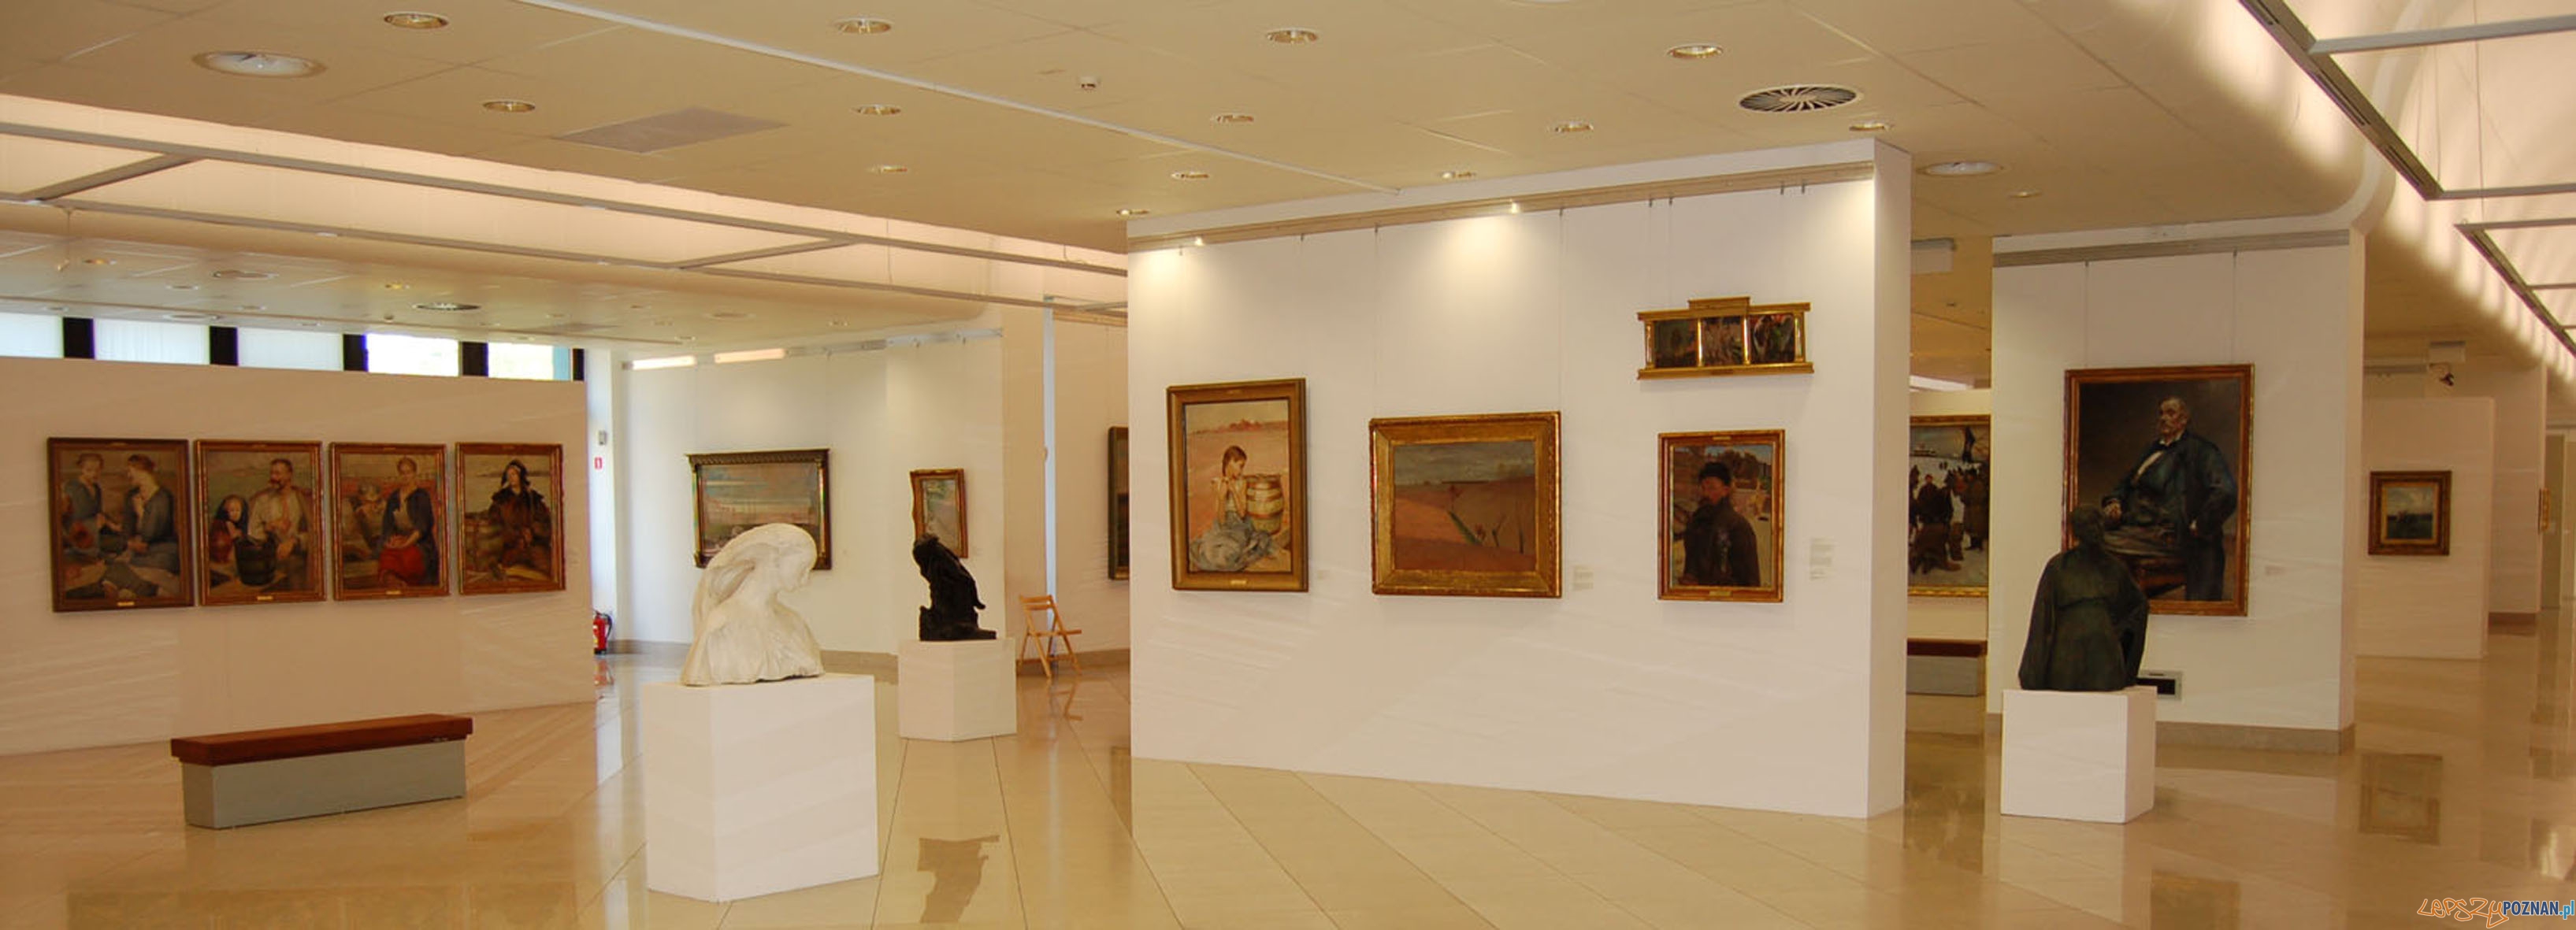 Muzeum Narodowe Galeria Malarstwa i Rzeźby 2012  Foto: MNP 